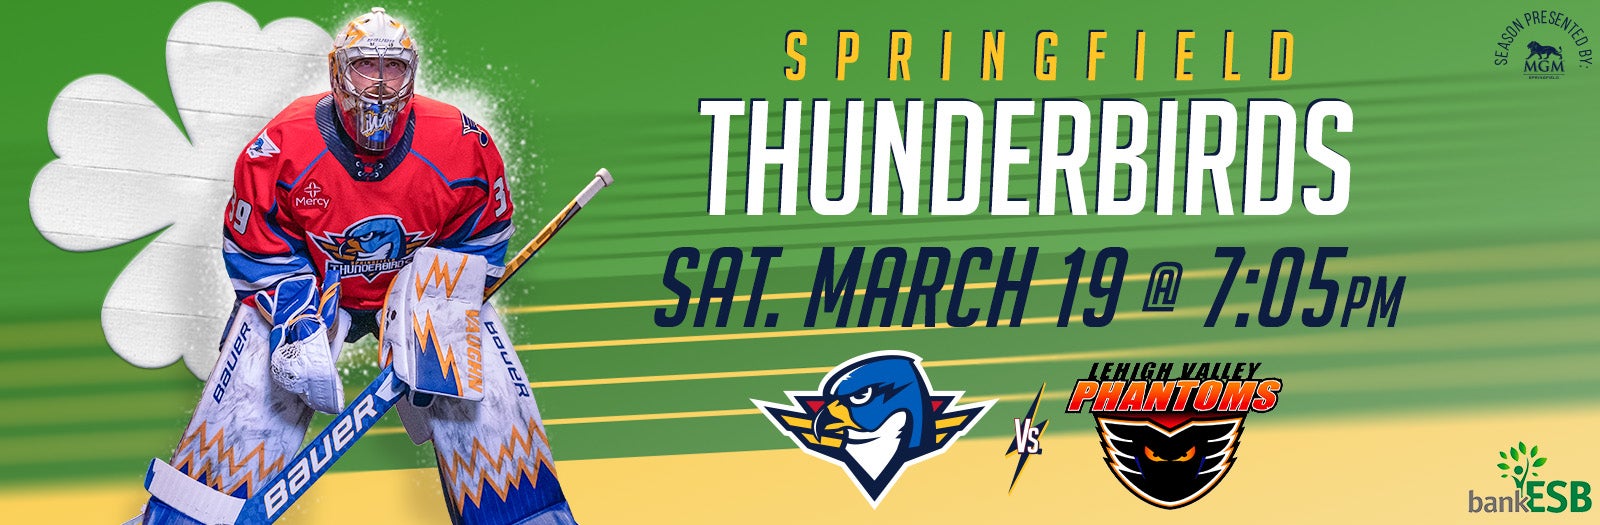 TONIGHT: Springfield Thunderbirds vs Lehigh Valley Phantoms